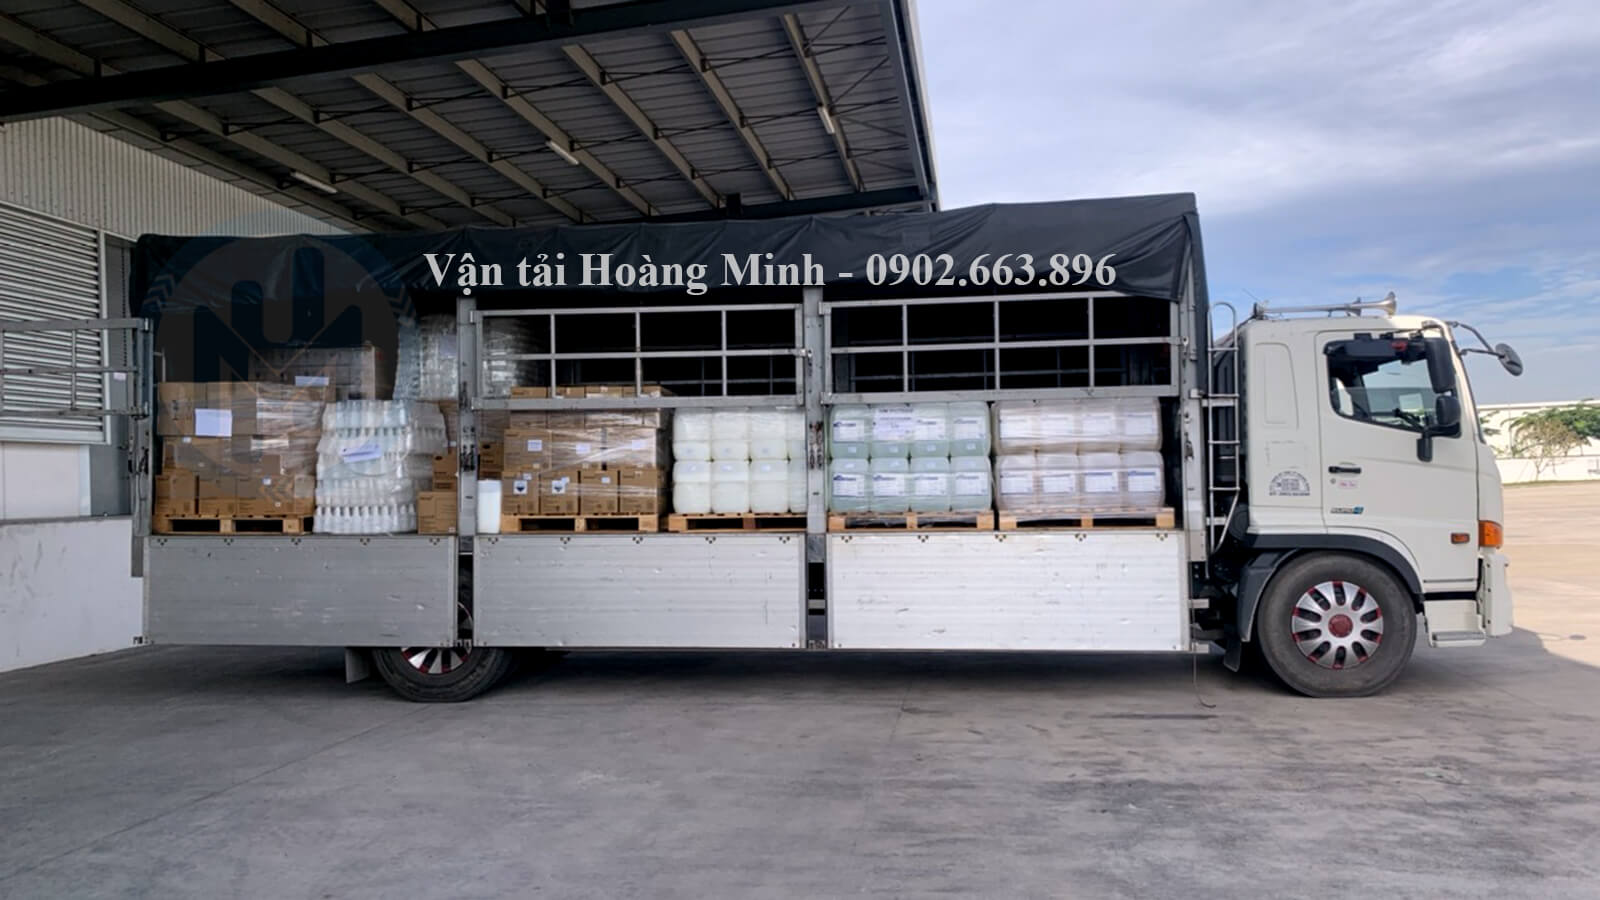 Đặc điểm của xe tải chở hàng 10 tấn của Vận tải Hoàng Minh